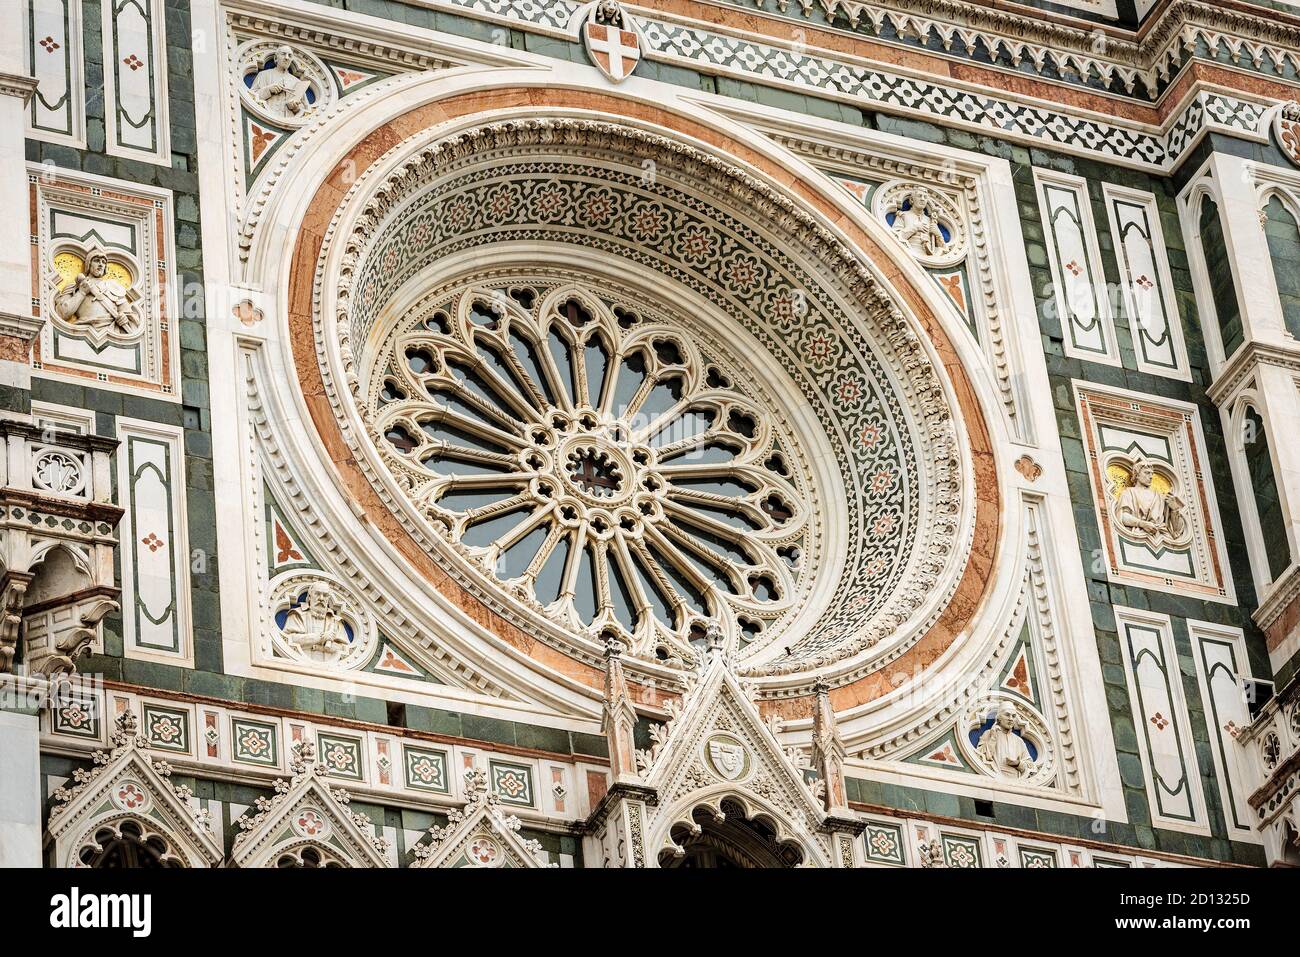 Cattedrale di Firenze, Duomo di Santa Maria del Fiore, primo piano della facciata principale con il rosone. Patrimonio dell'umanità dell'UNESCO, Toscana, Italia. Foto Stock